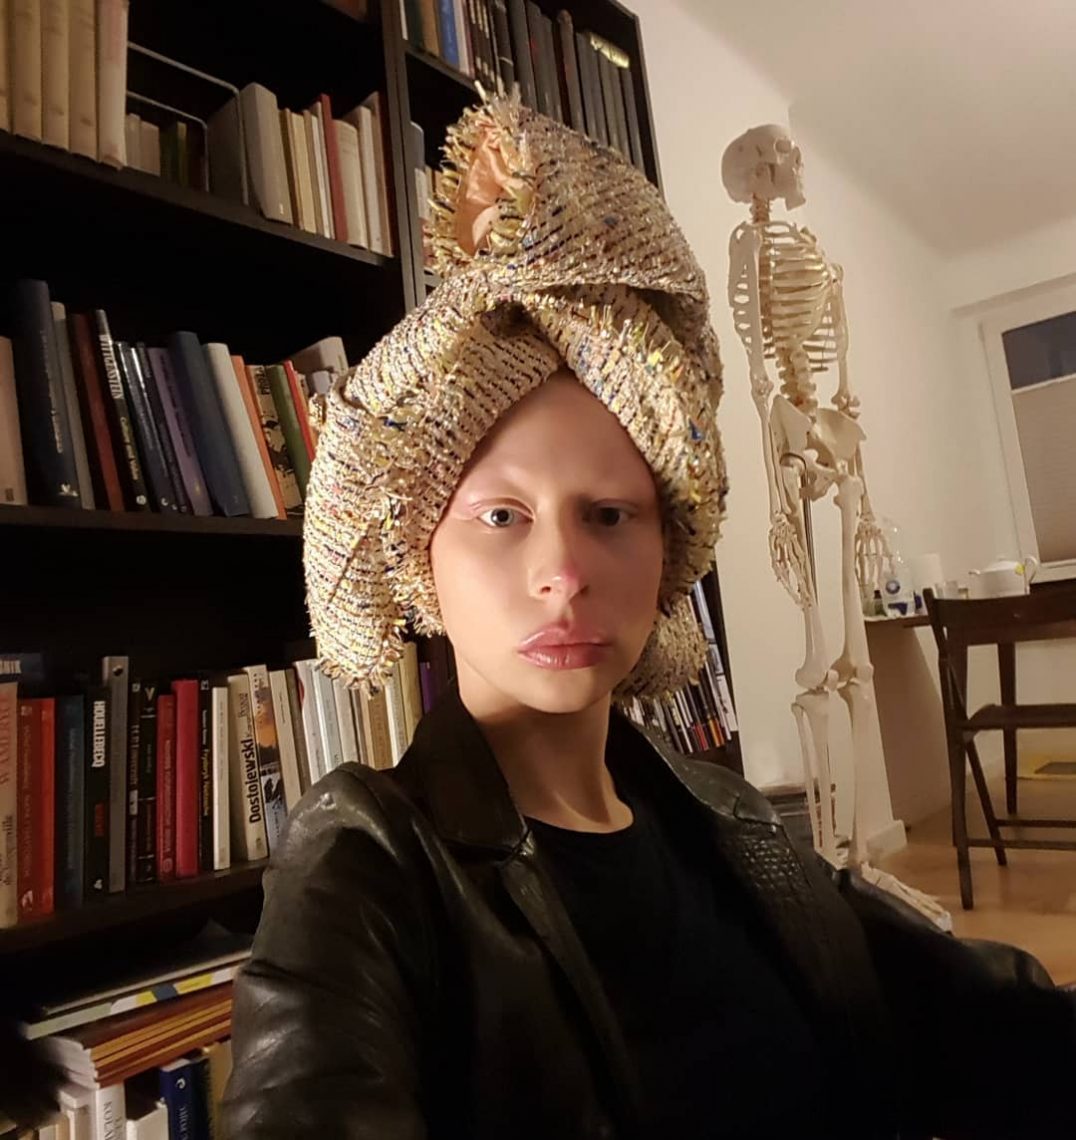 Zuzanna Bartoszek siedzi, na głowie ma zawiązaną tkaninę słomkową jak zwykłą chustę. Za nią regał z książkami oraz szkielet medyczny człowieka